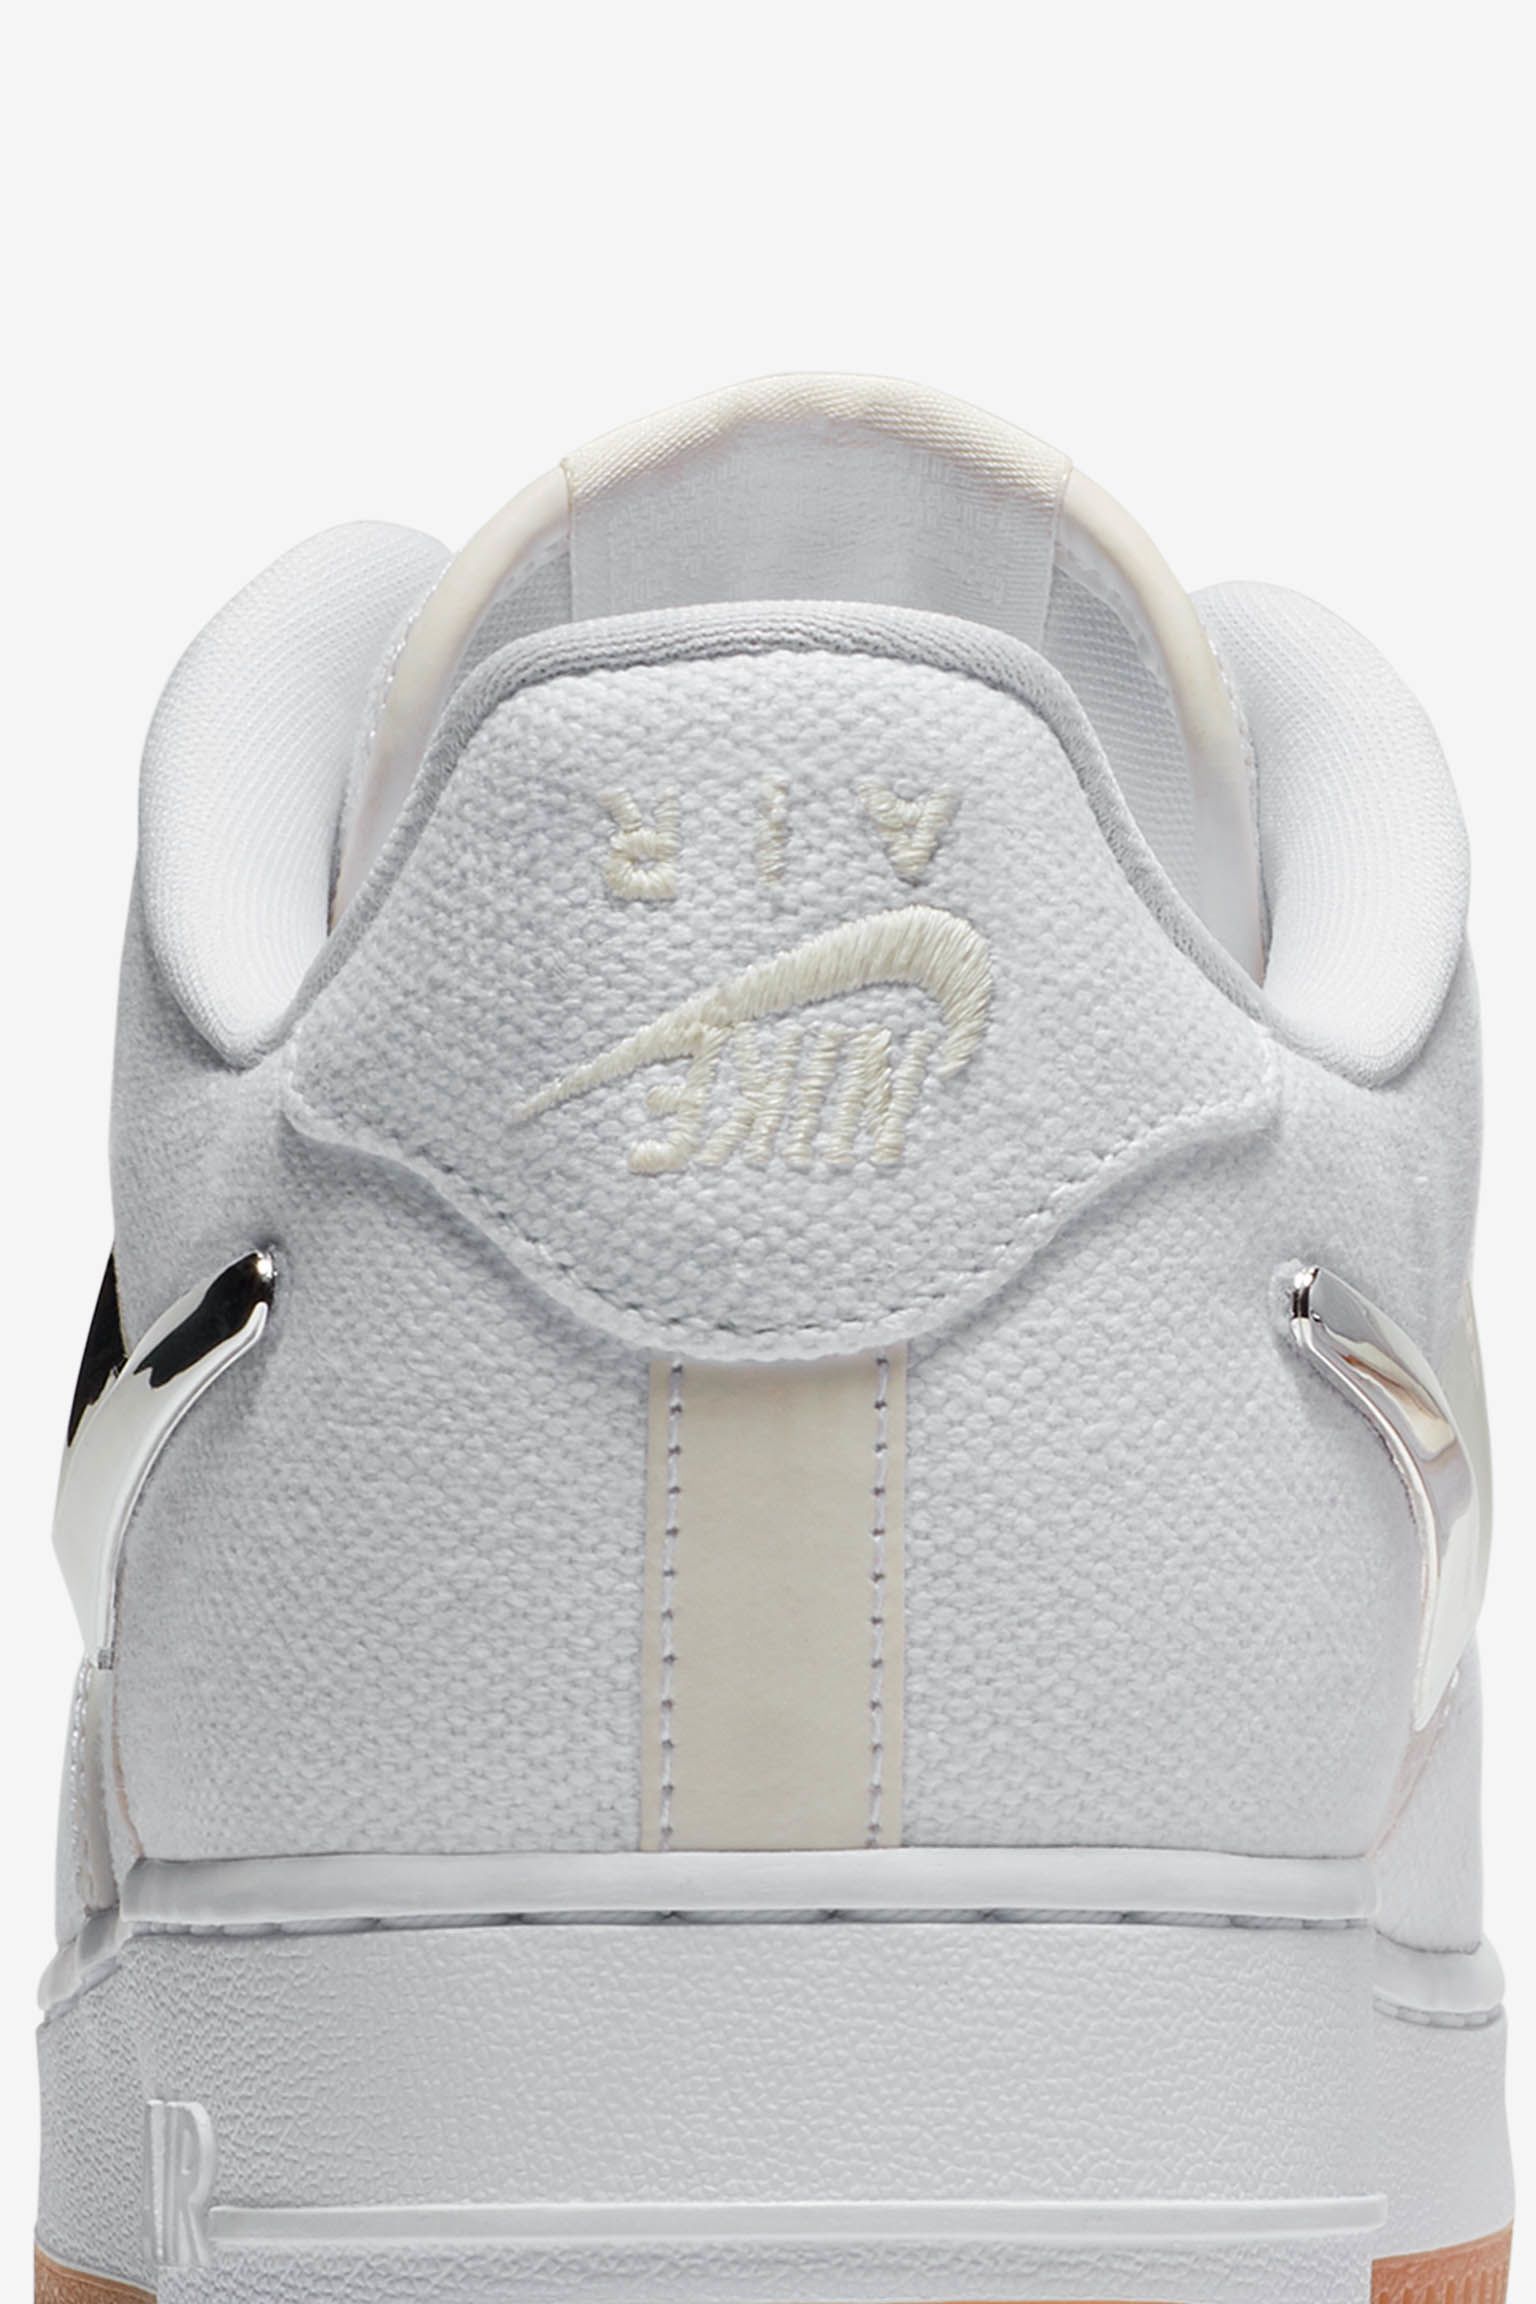 NIKE公式】ナイキ エア フォース 'Travis Scott' 発売日. Nike SNKRS JP